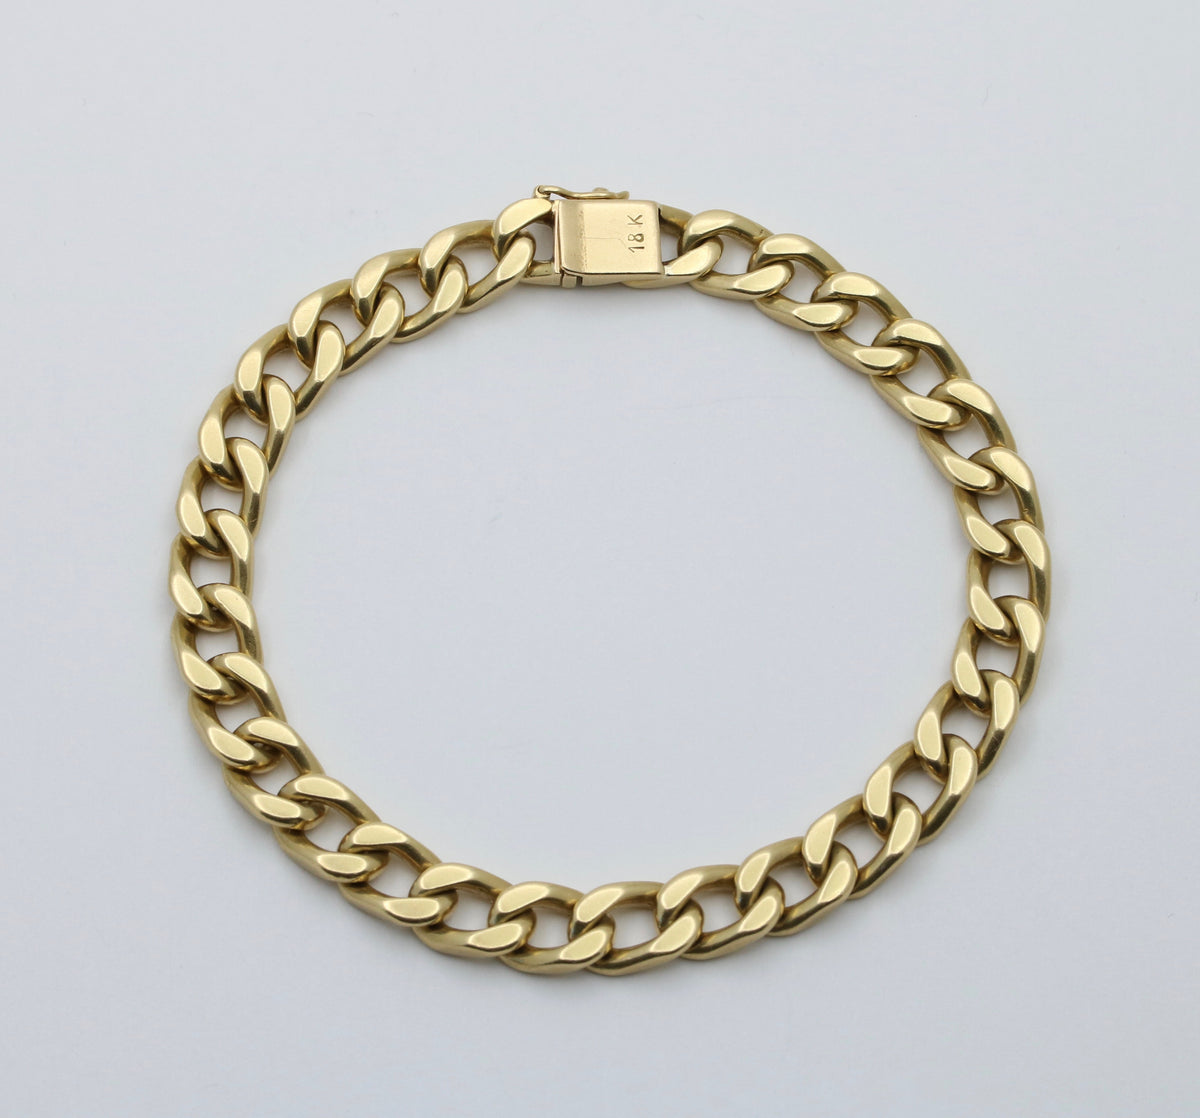 Vintage Diamond and 18K Gold Solid Curb Link Bracelet, 7.5” Long